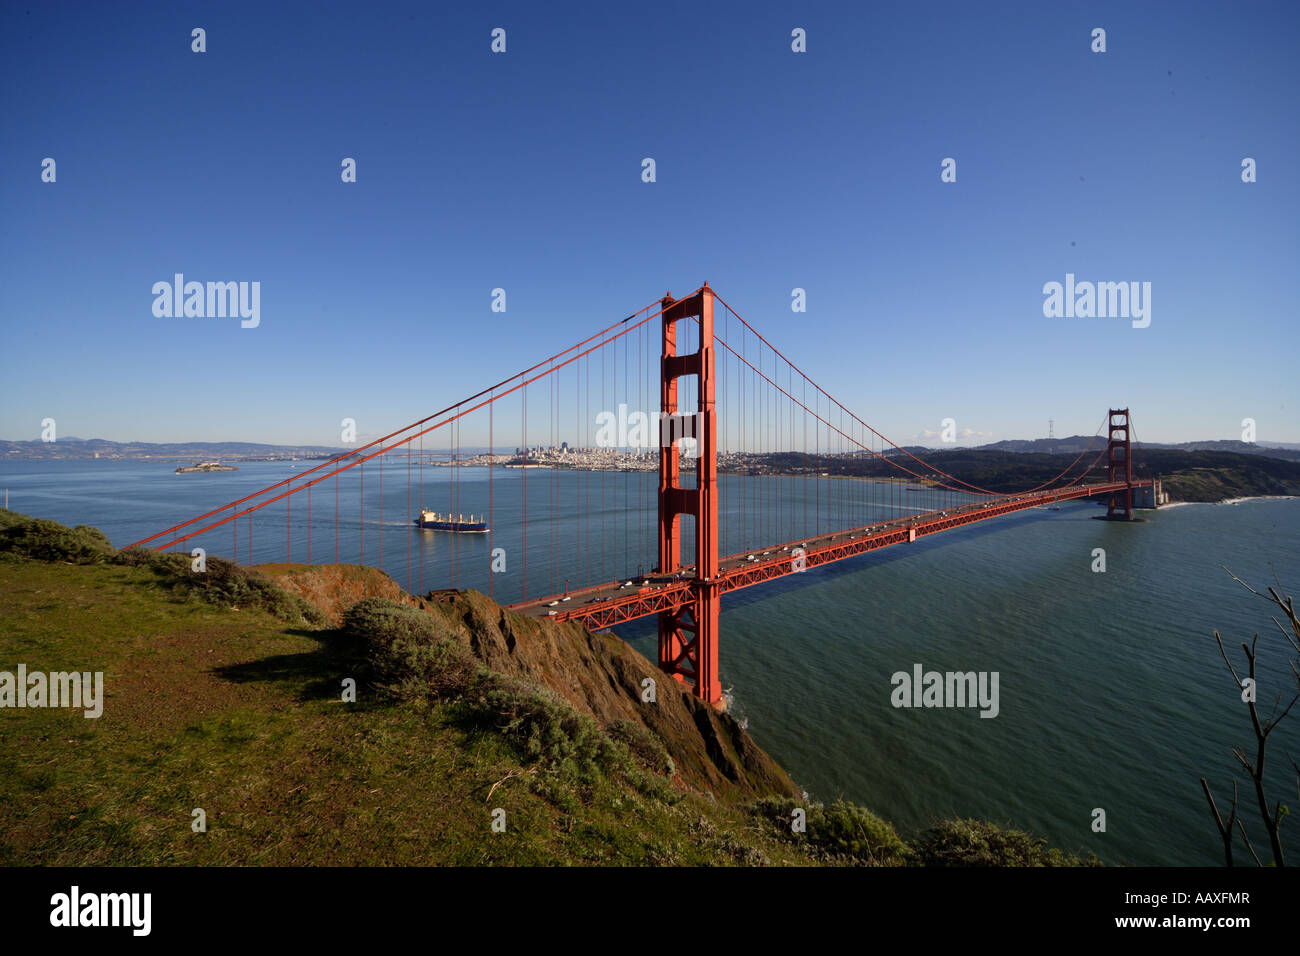 Amerika USA Staaten Reise us californien urlaub Kalifornien Golden gate san franzsico Stadt Golden Gate Bridge Stock Photo